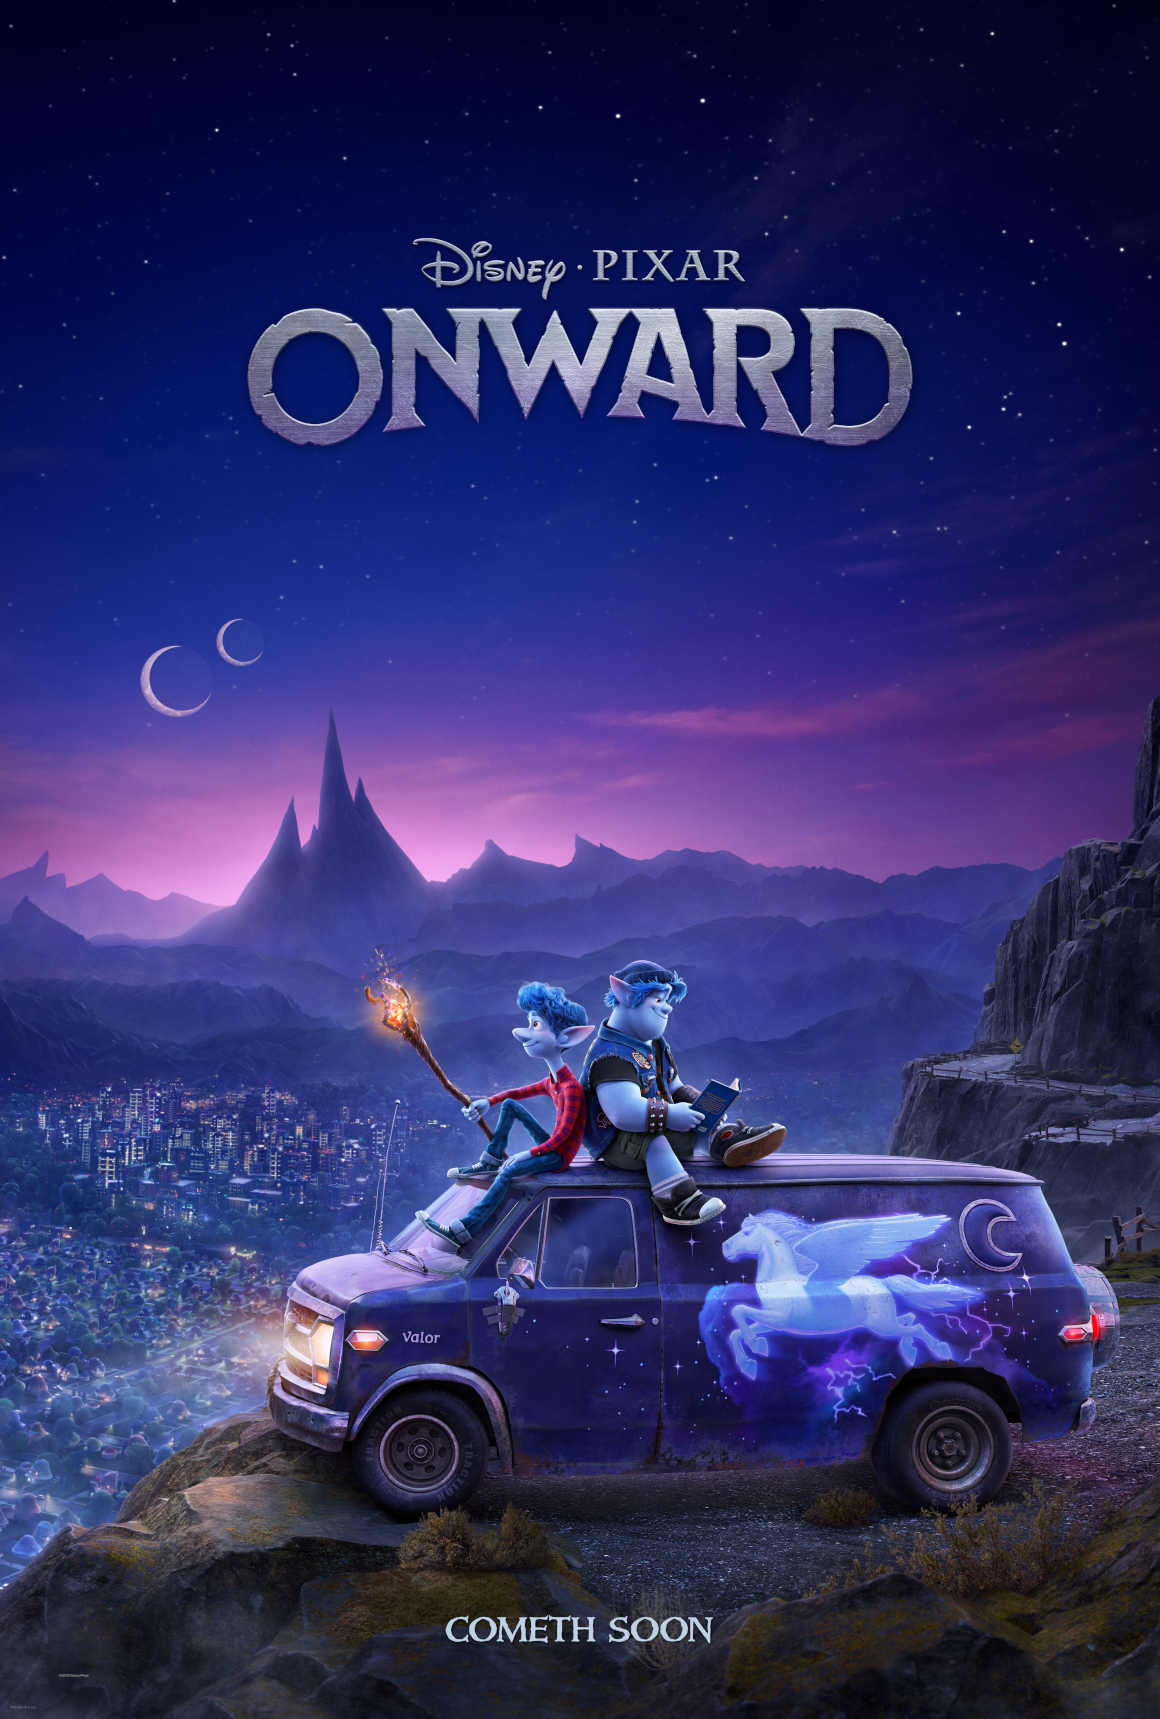 Poster oficial de 'Unidos' ('Onward') la nueva película de Disney Pixar.